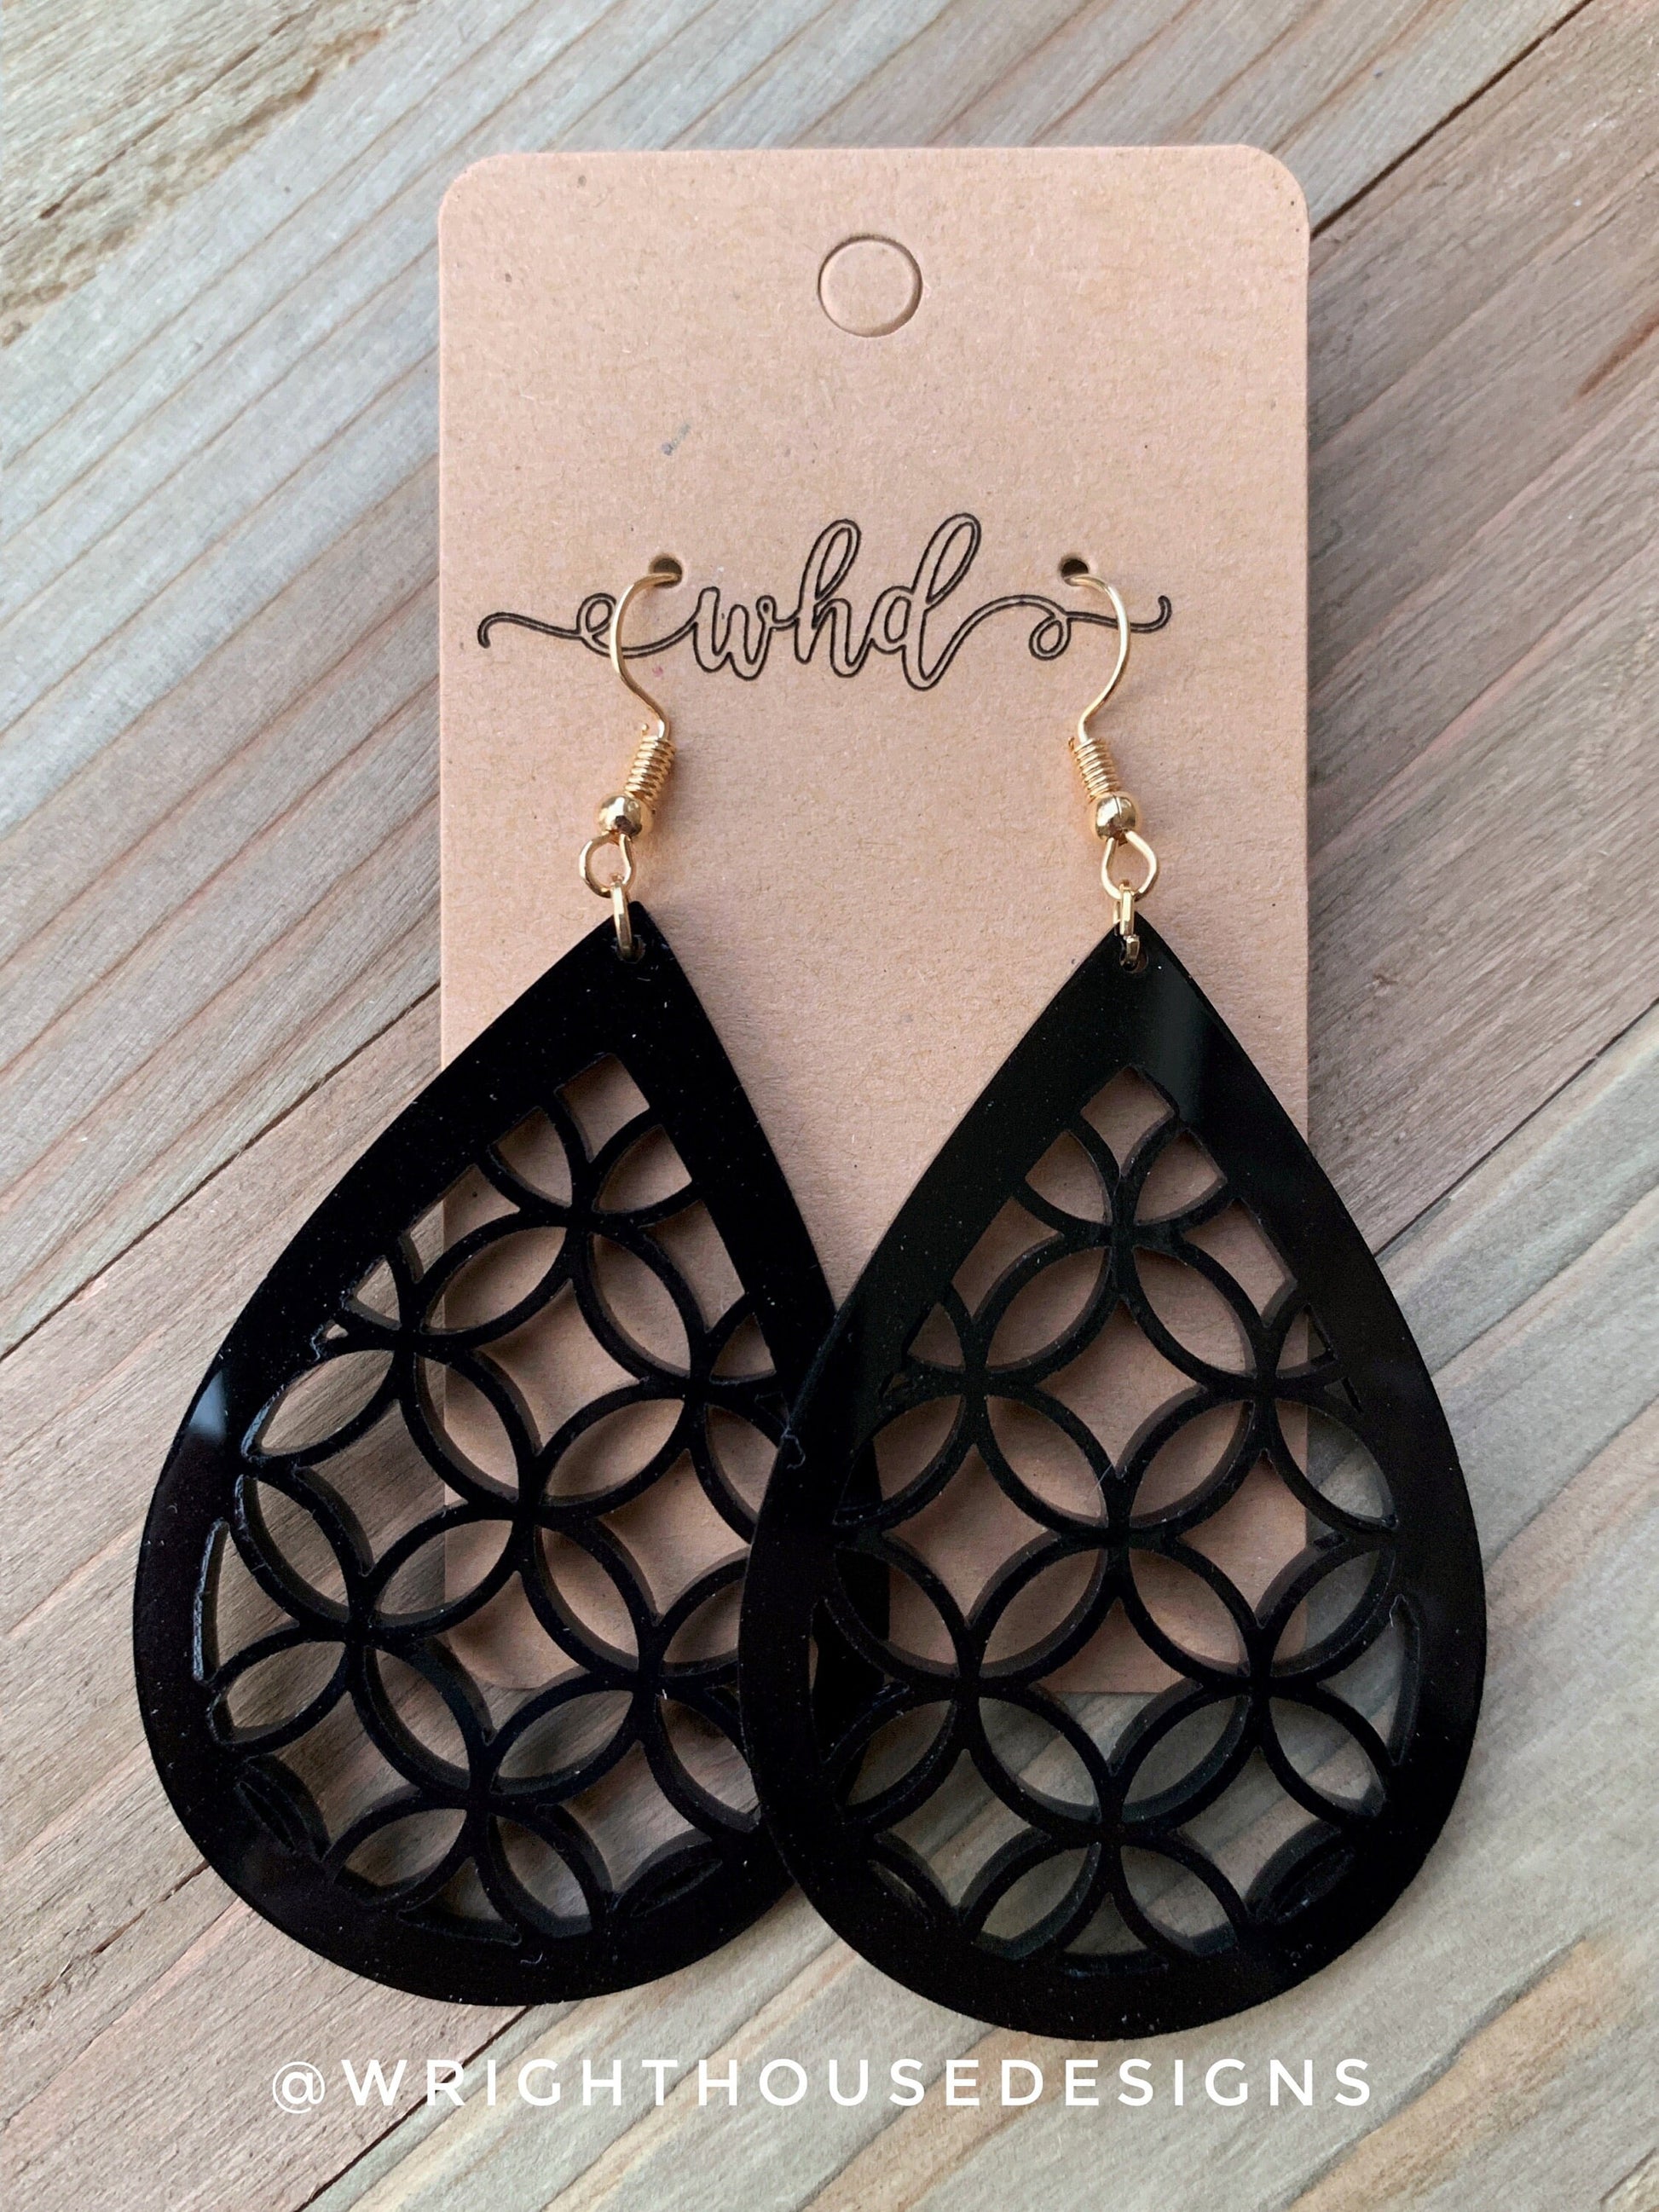 Flower of life Style Black Acrylic - Geometric Pattern Earrings